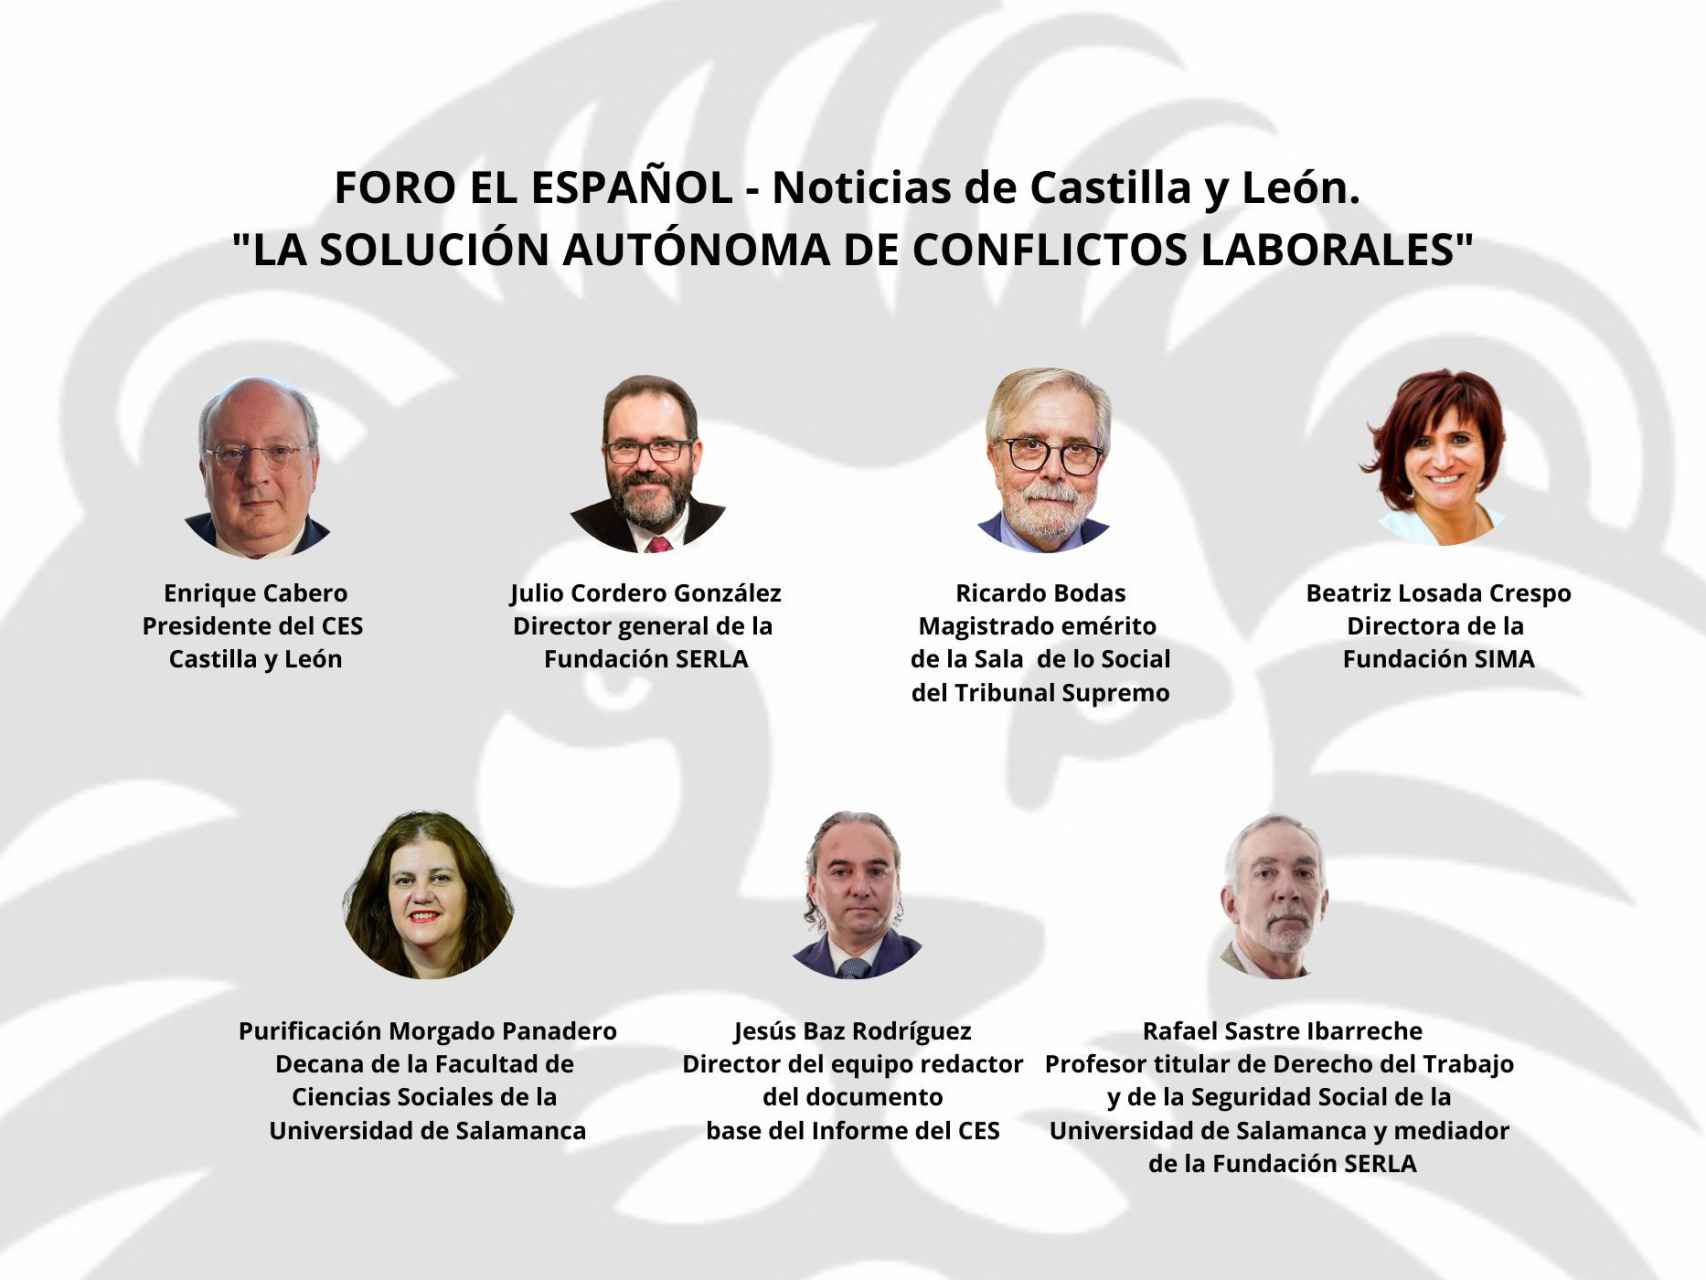 Intervinientes en el Foro ‘La solución autónoma de conflictos laborales’ que organiza EL ESPAÑOL-Noticias de Castilla y León junto al CESCyL